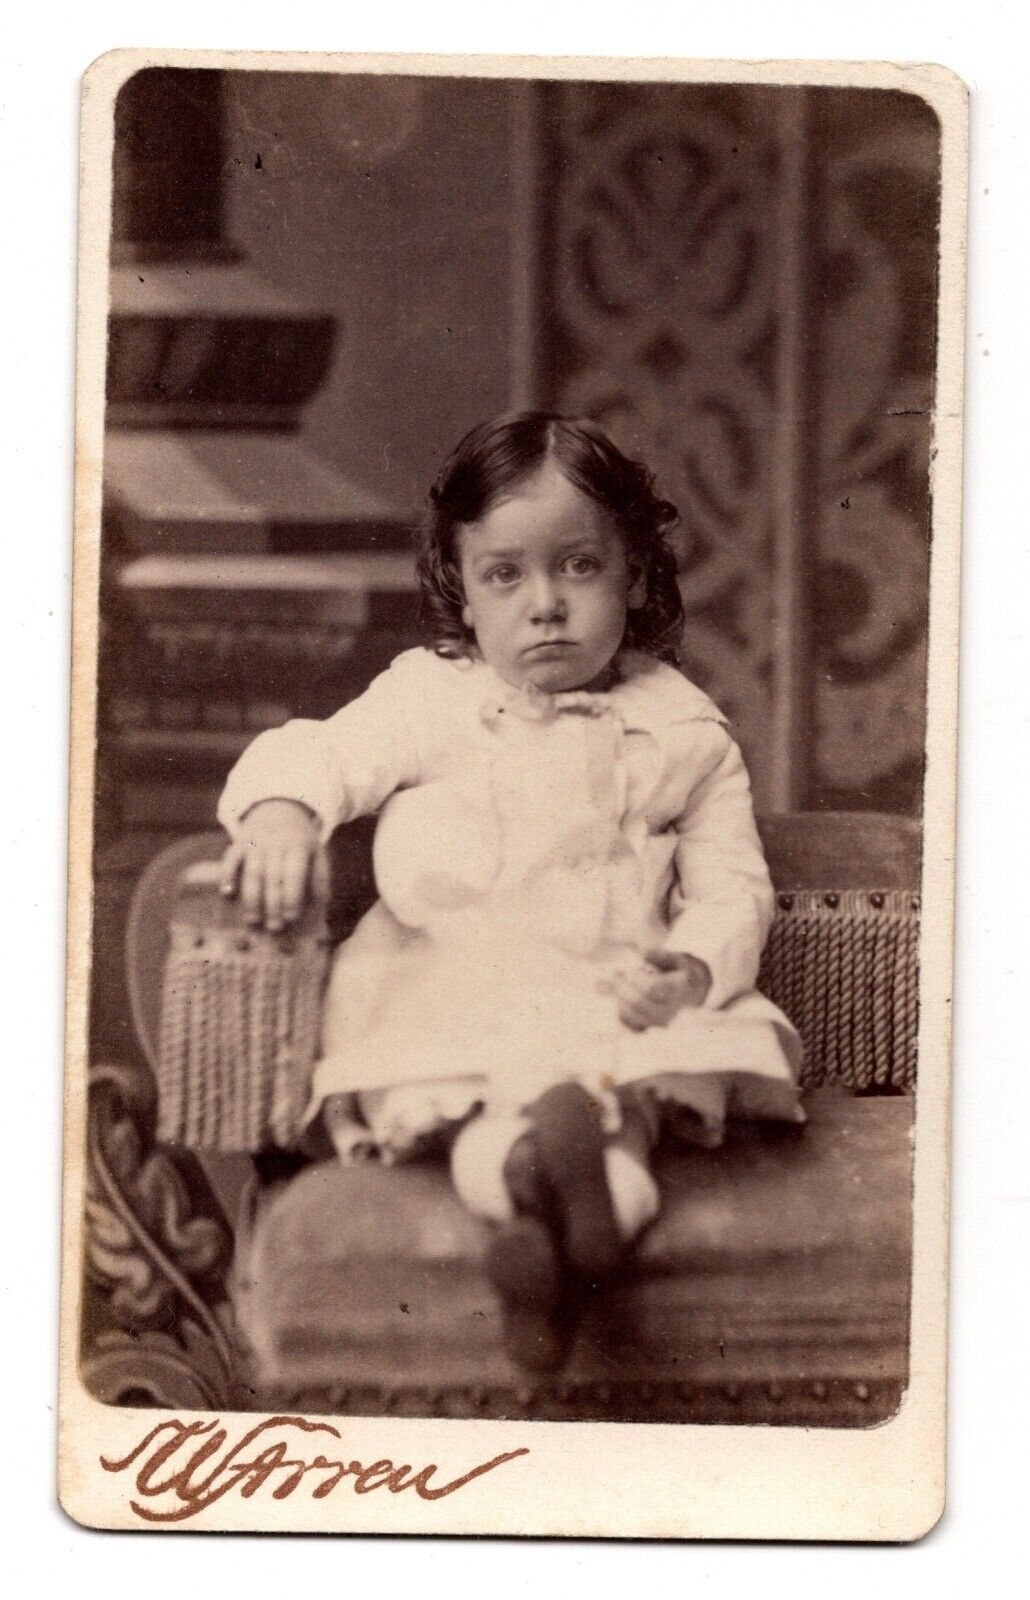 ANTIQUE CDV C. 1880s WARREN CUTE LITTLE GIRL IN WHITE DRESS BOSTON MASSACHUSETTS